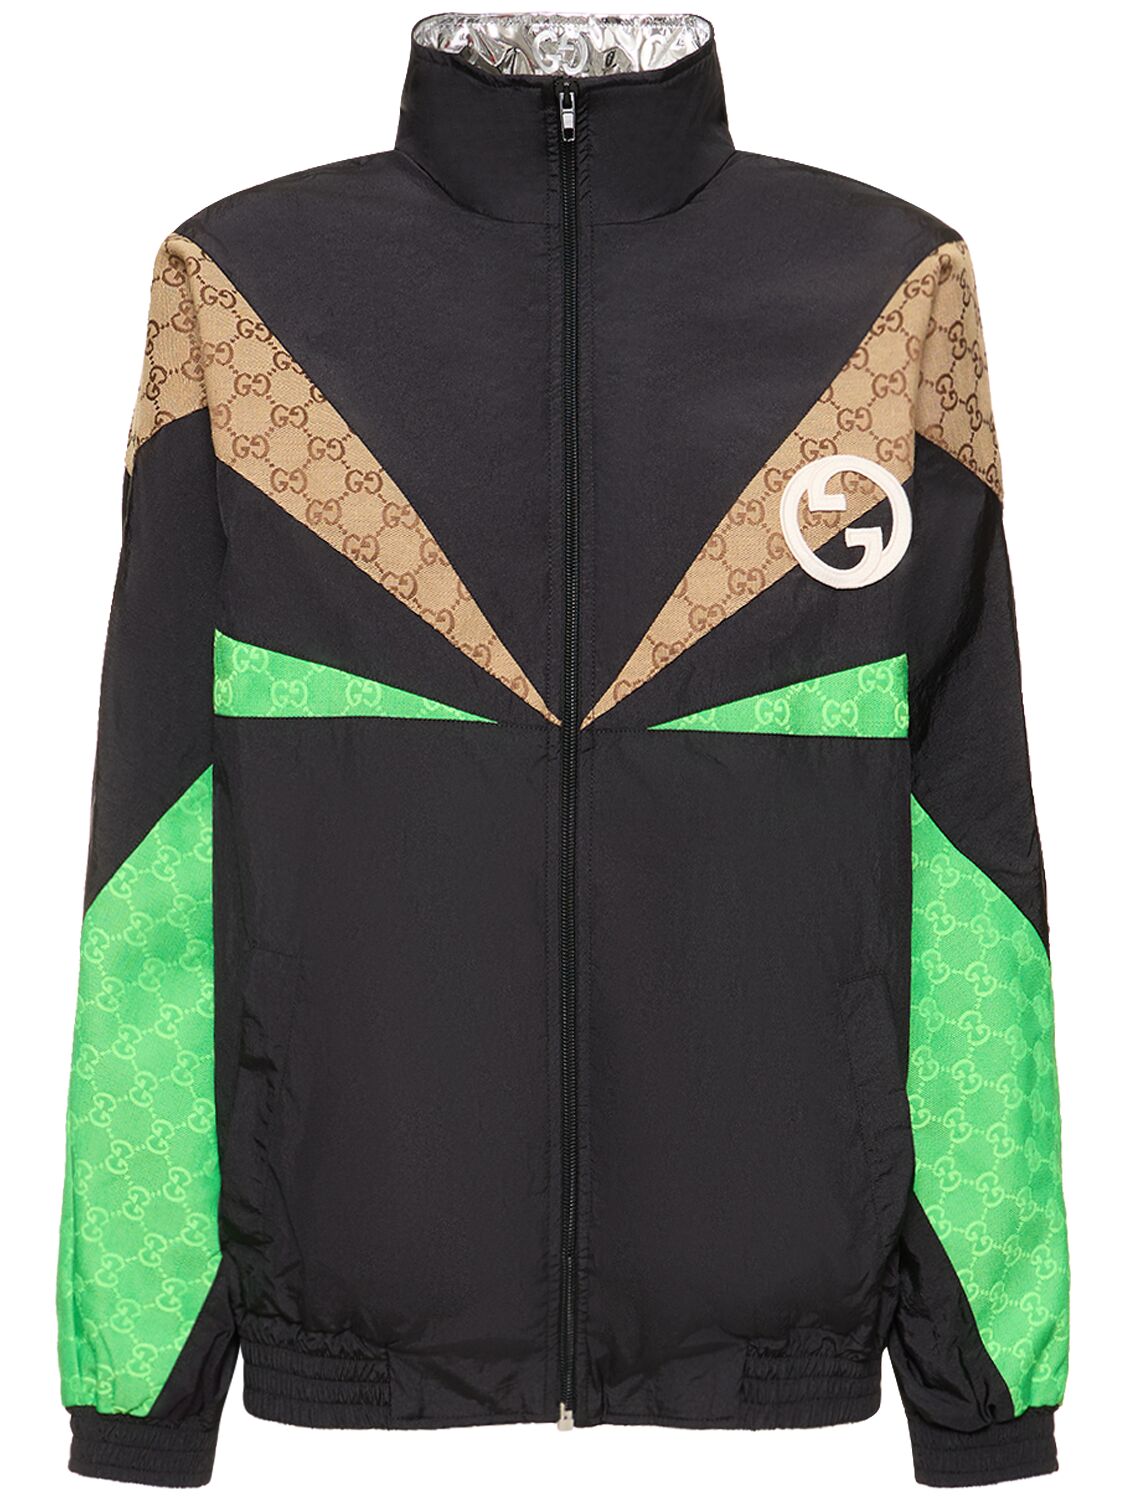 Gucci Gg Monogram Highneck Track Jacket In Black,multicolor